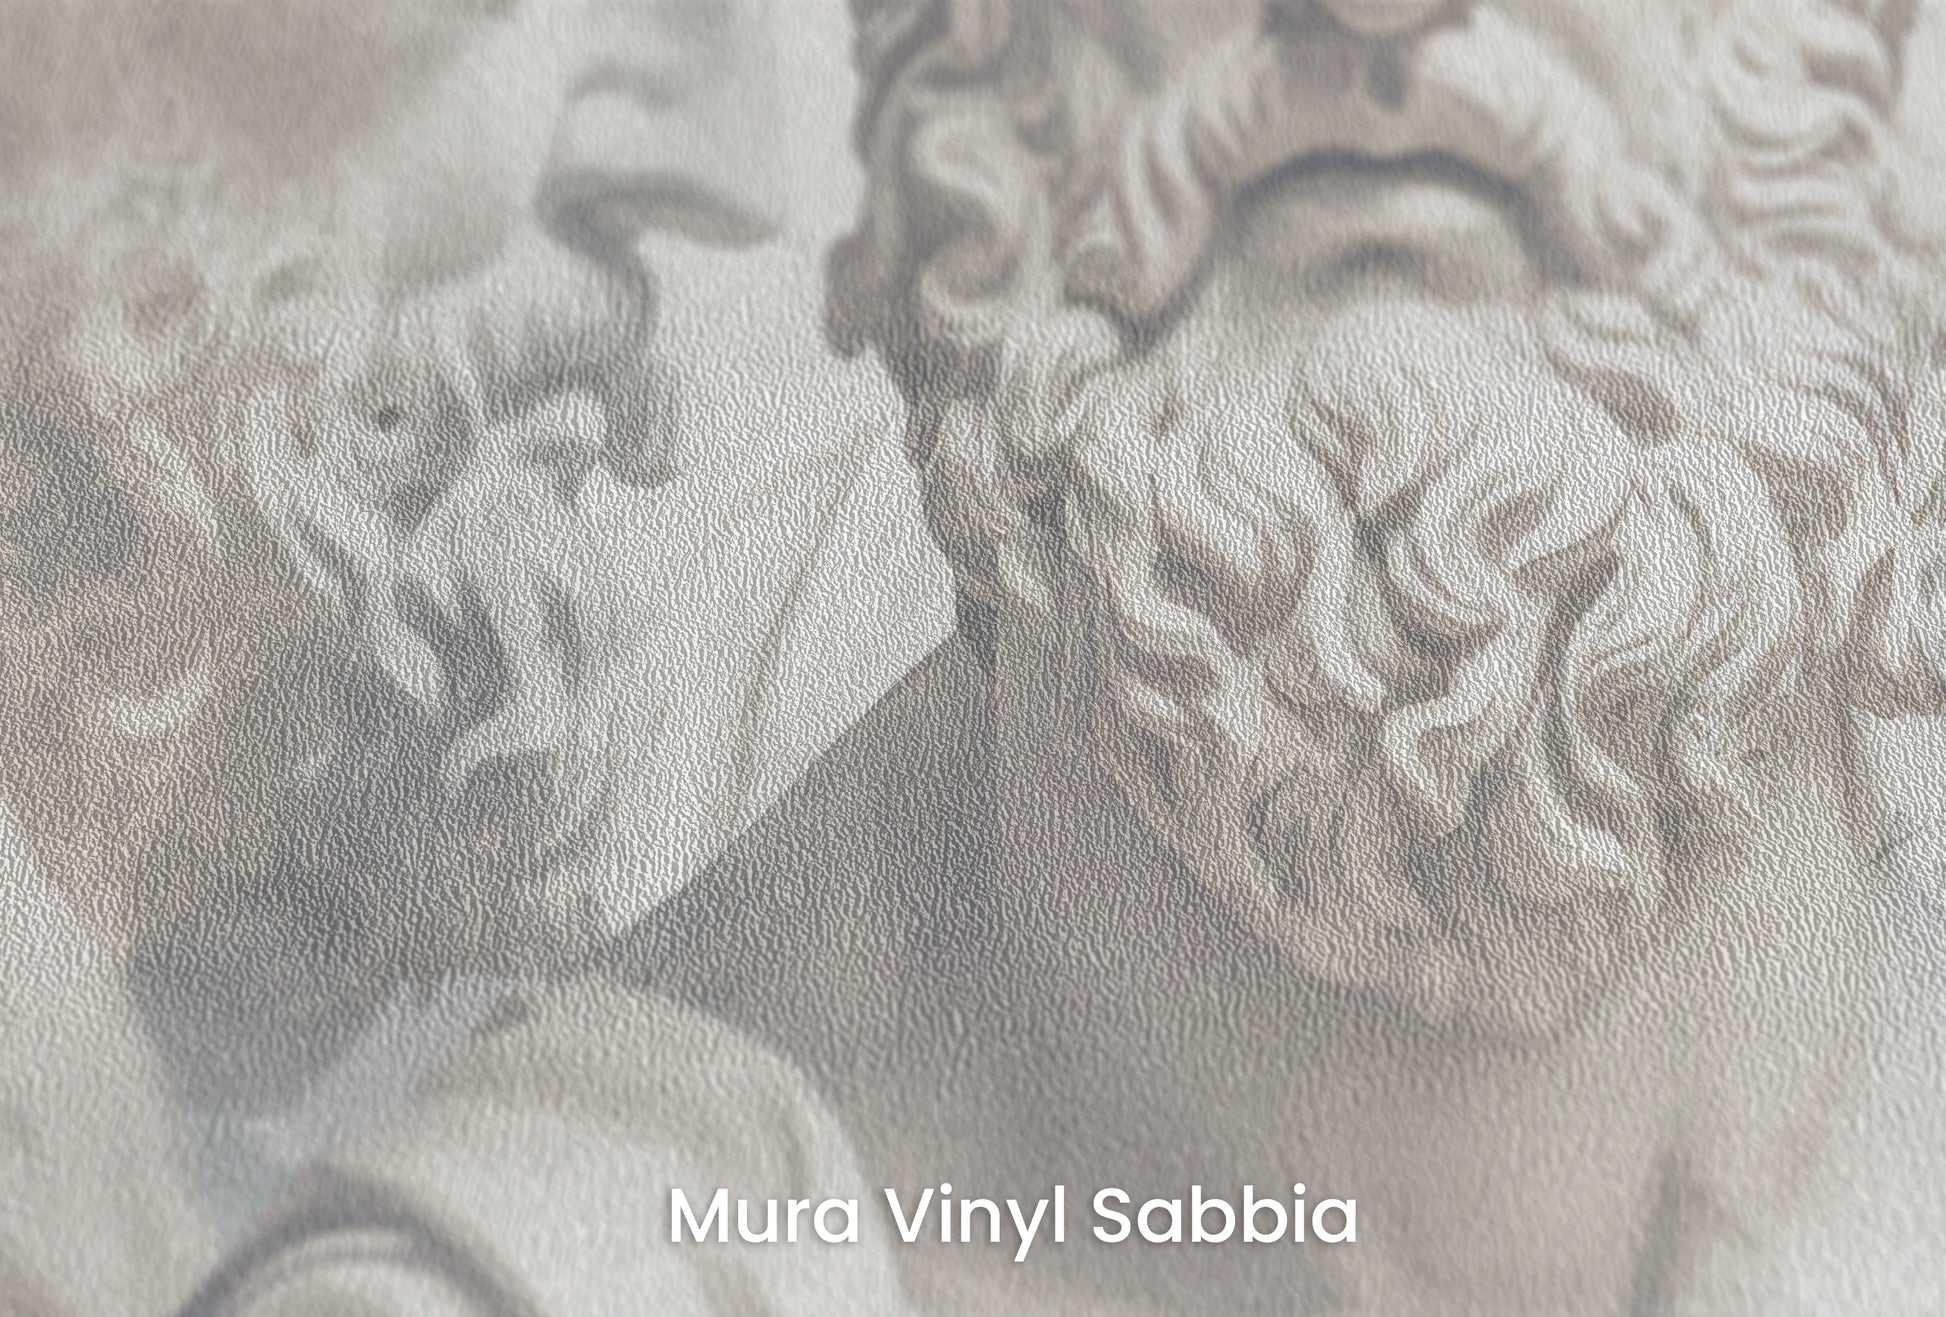 Zbliżenie na artystyczną fototapetę o nazwie Philosopher's Profile na podłożu Mura Vinyl Sabbia struktura grubego ziarna piasku.